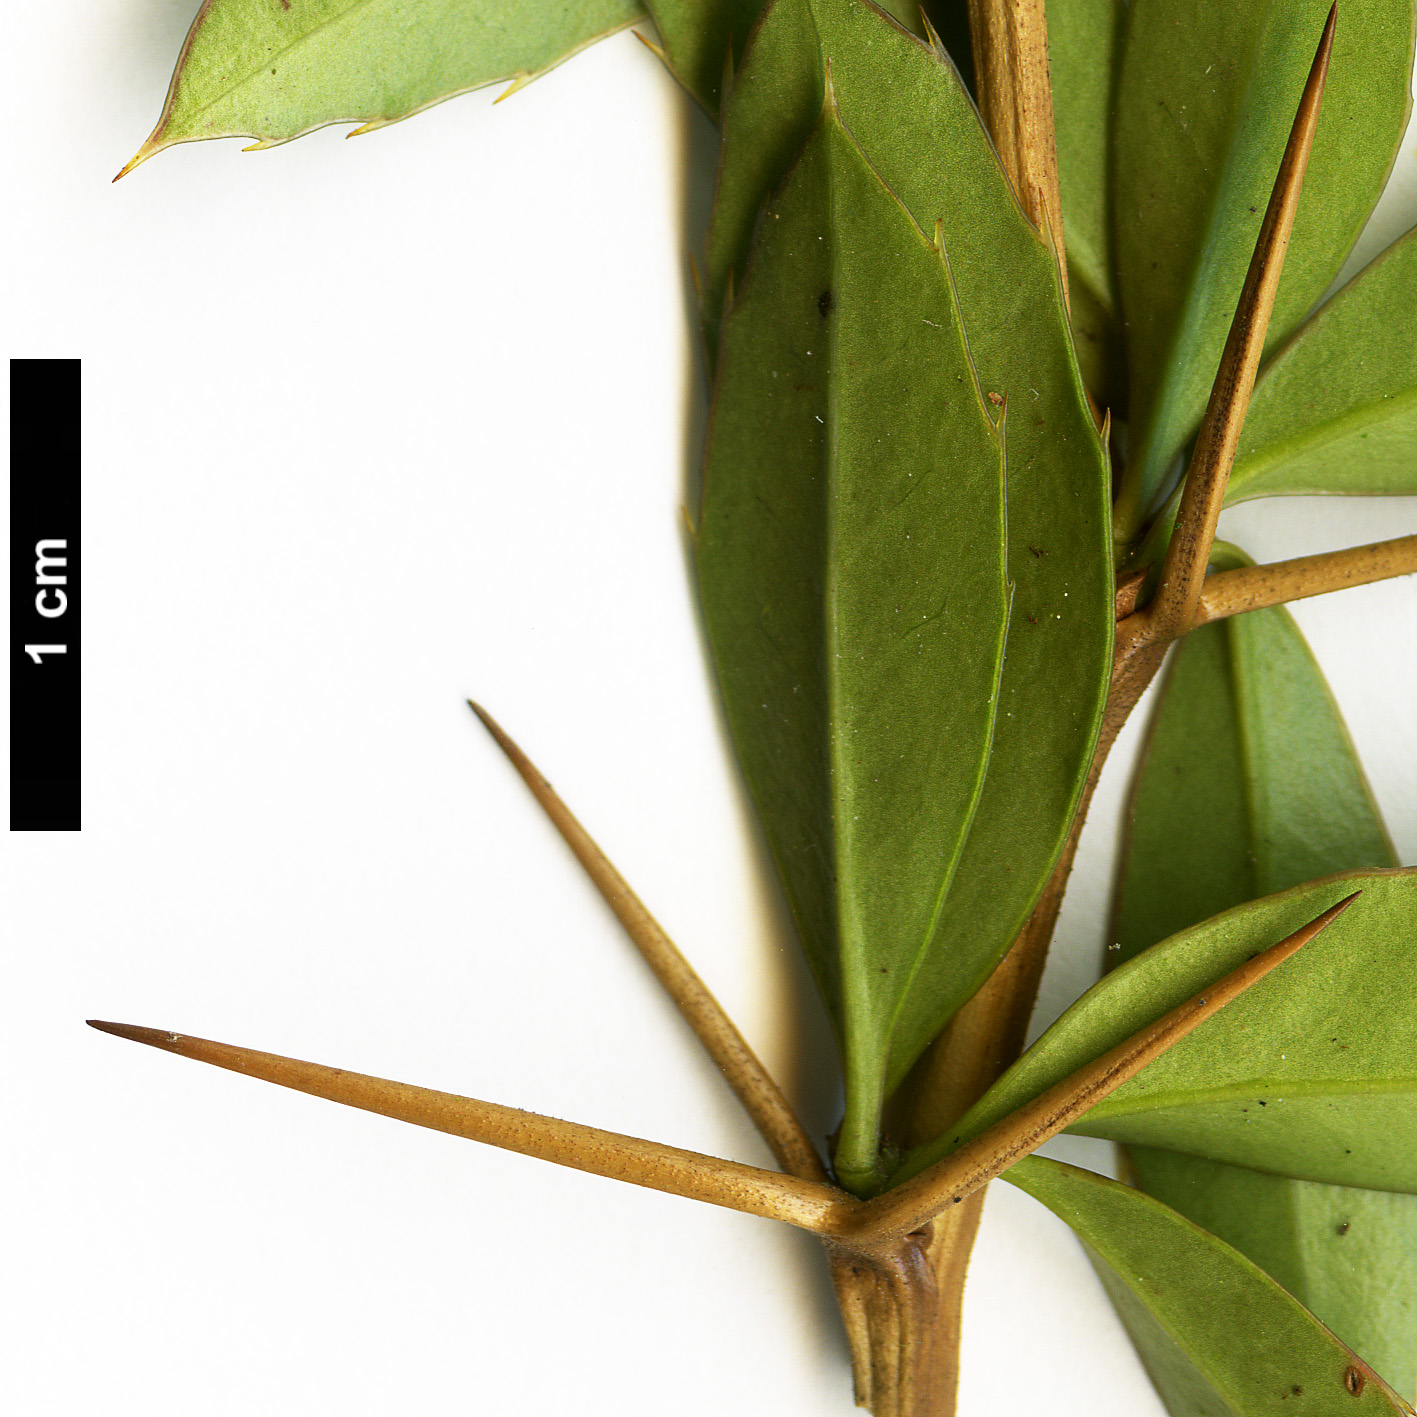 High resolution image: Family: Berberidaceae - Genus: Berberis - Taxon: kawakamii